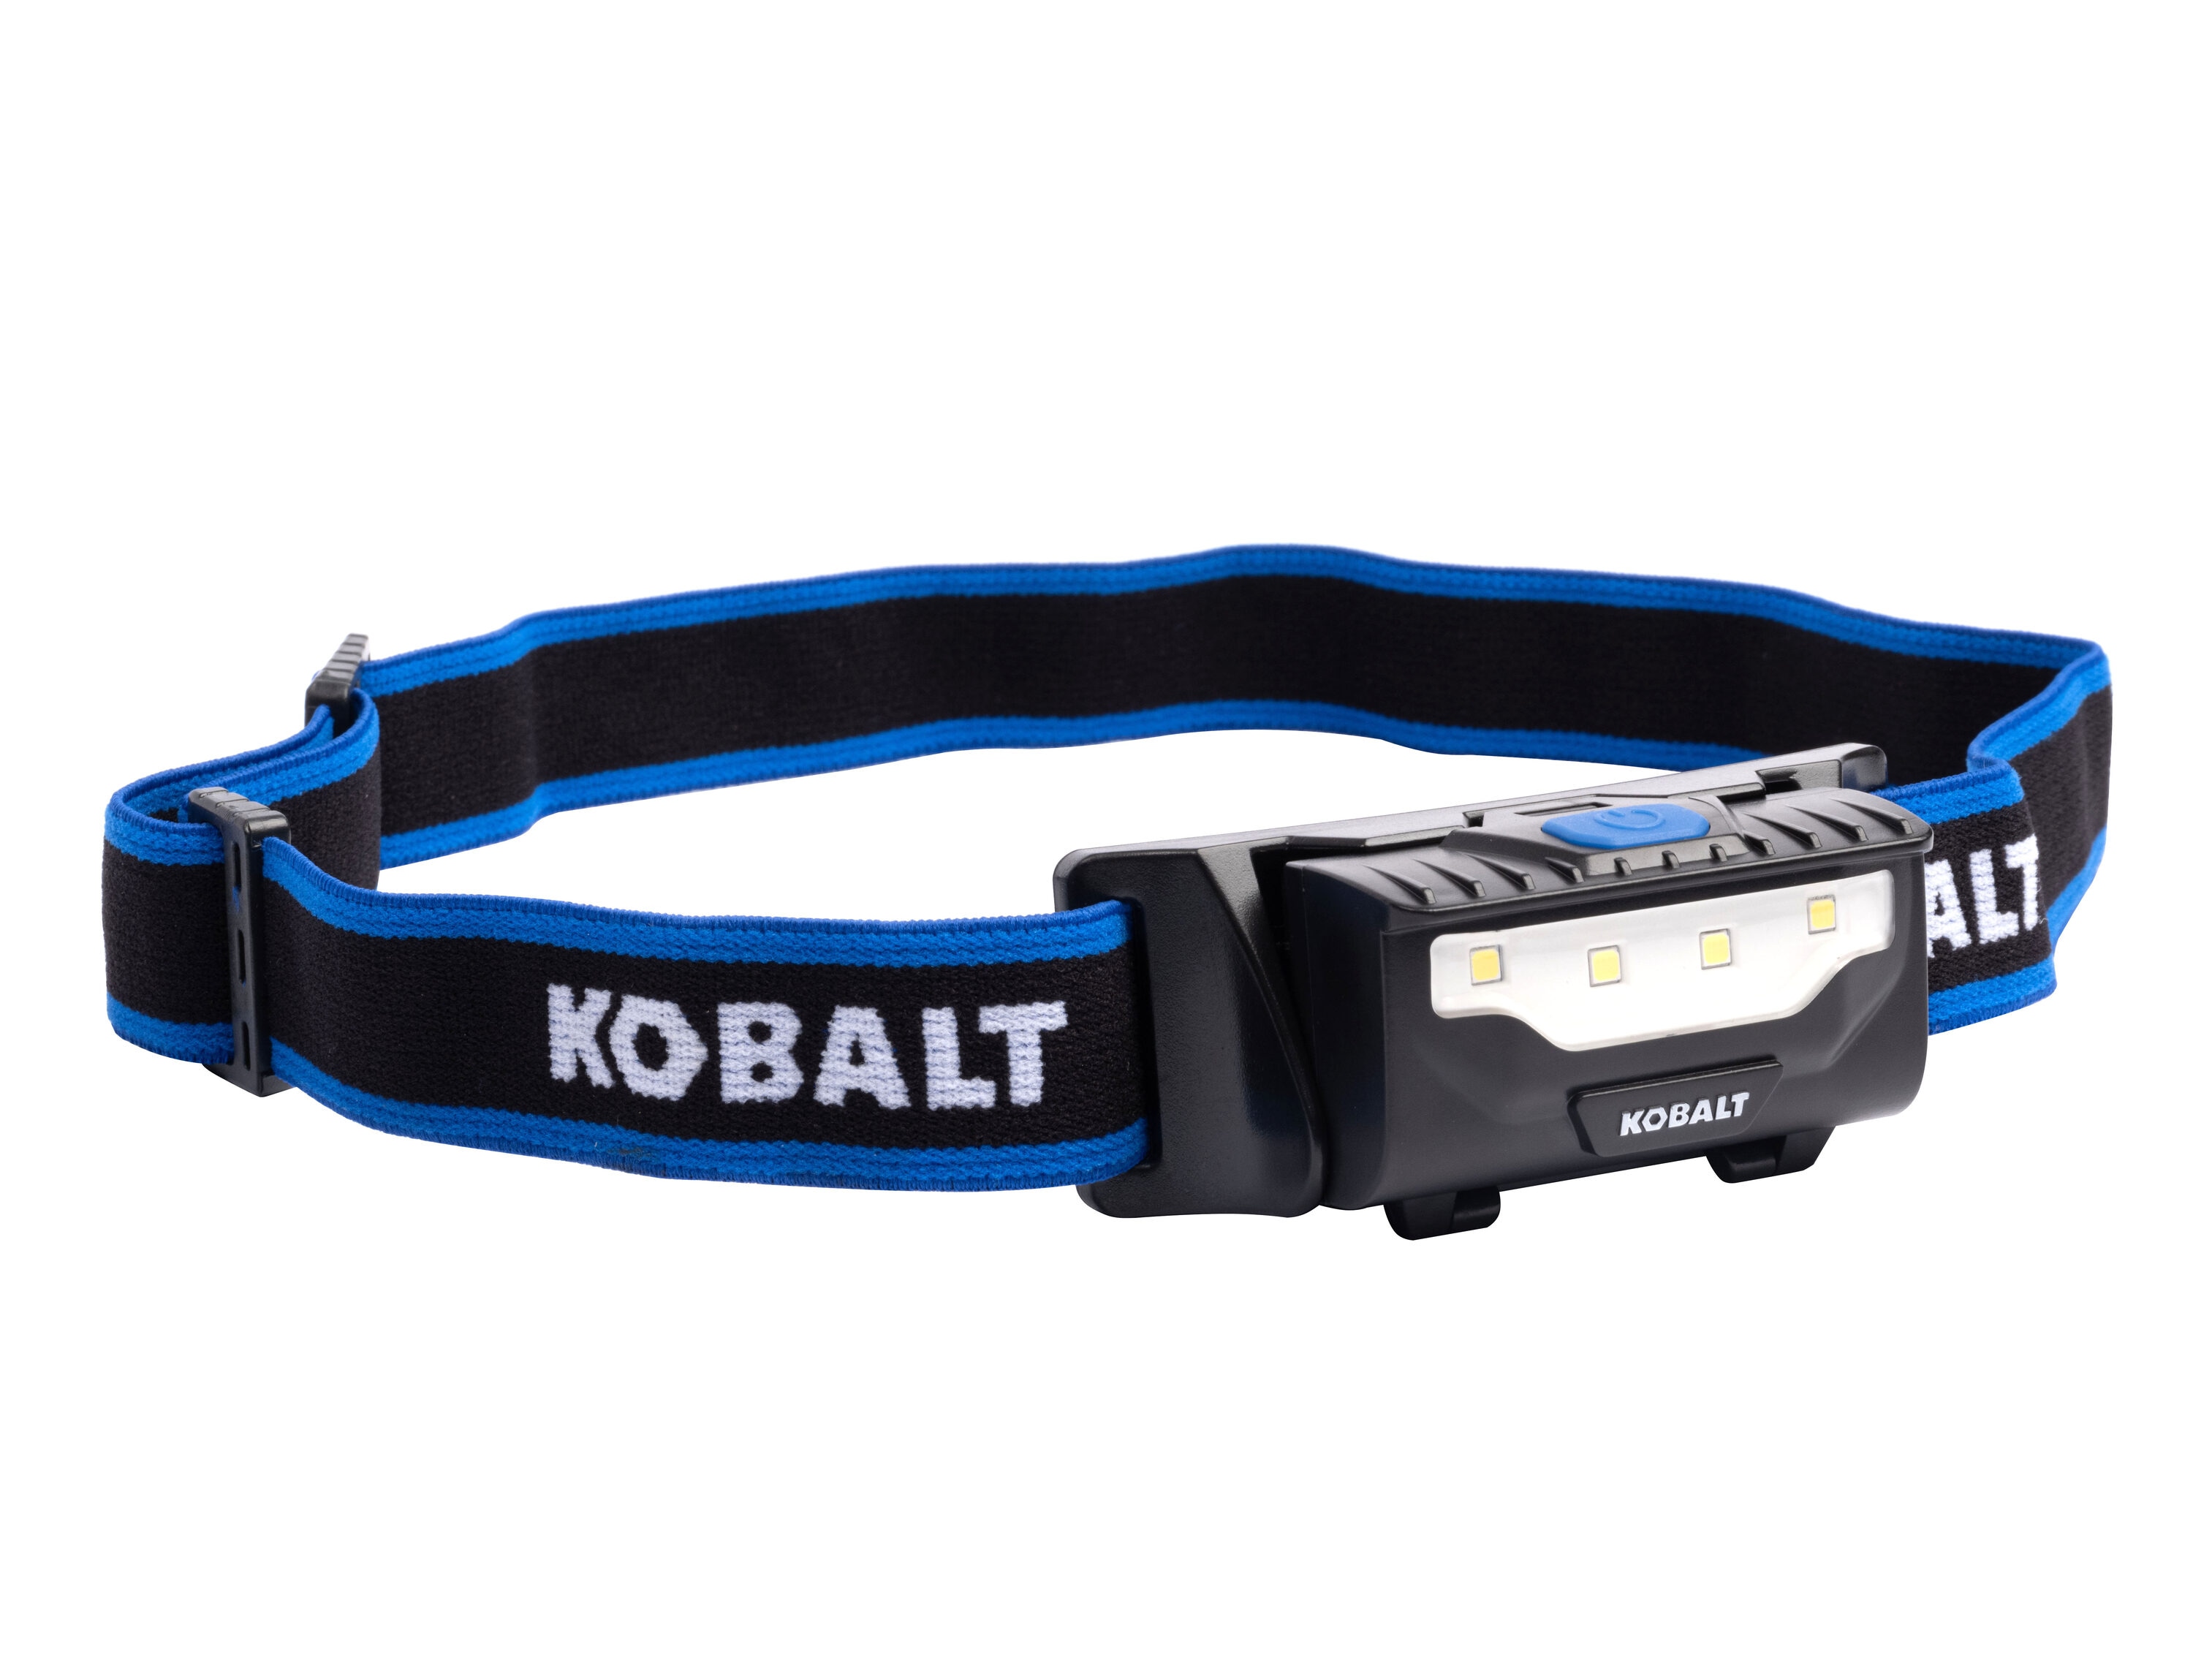 Kobalt 200-Lumen LED Headlamp (Battery Included) in the